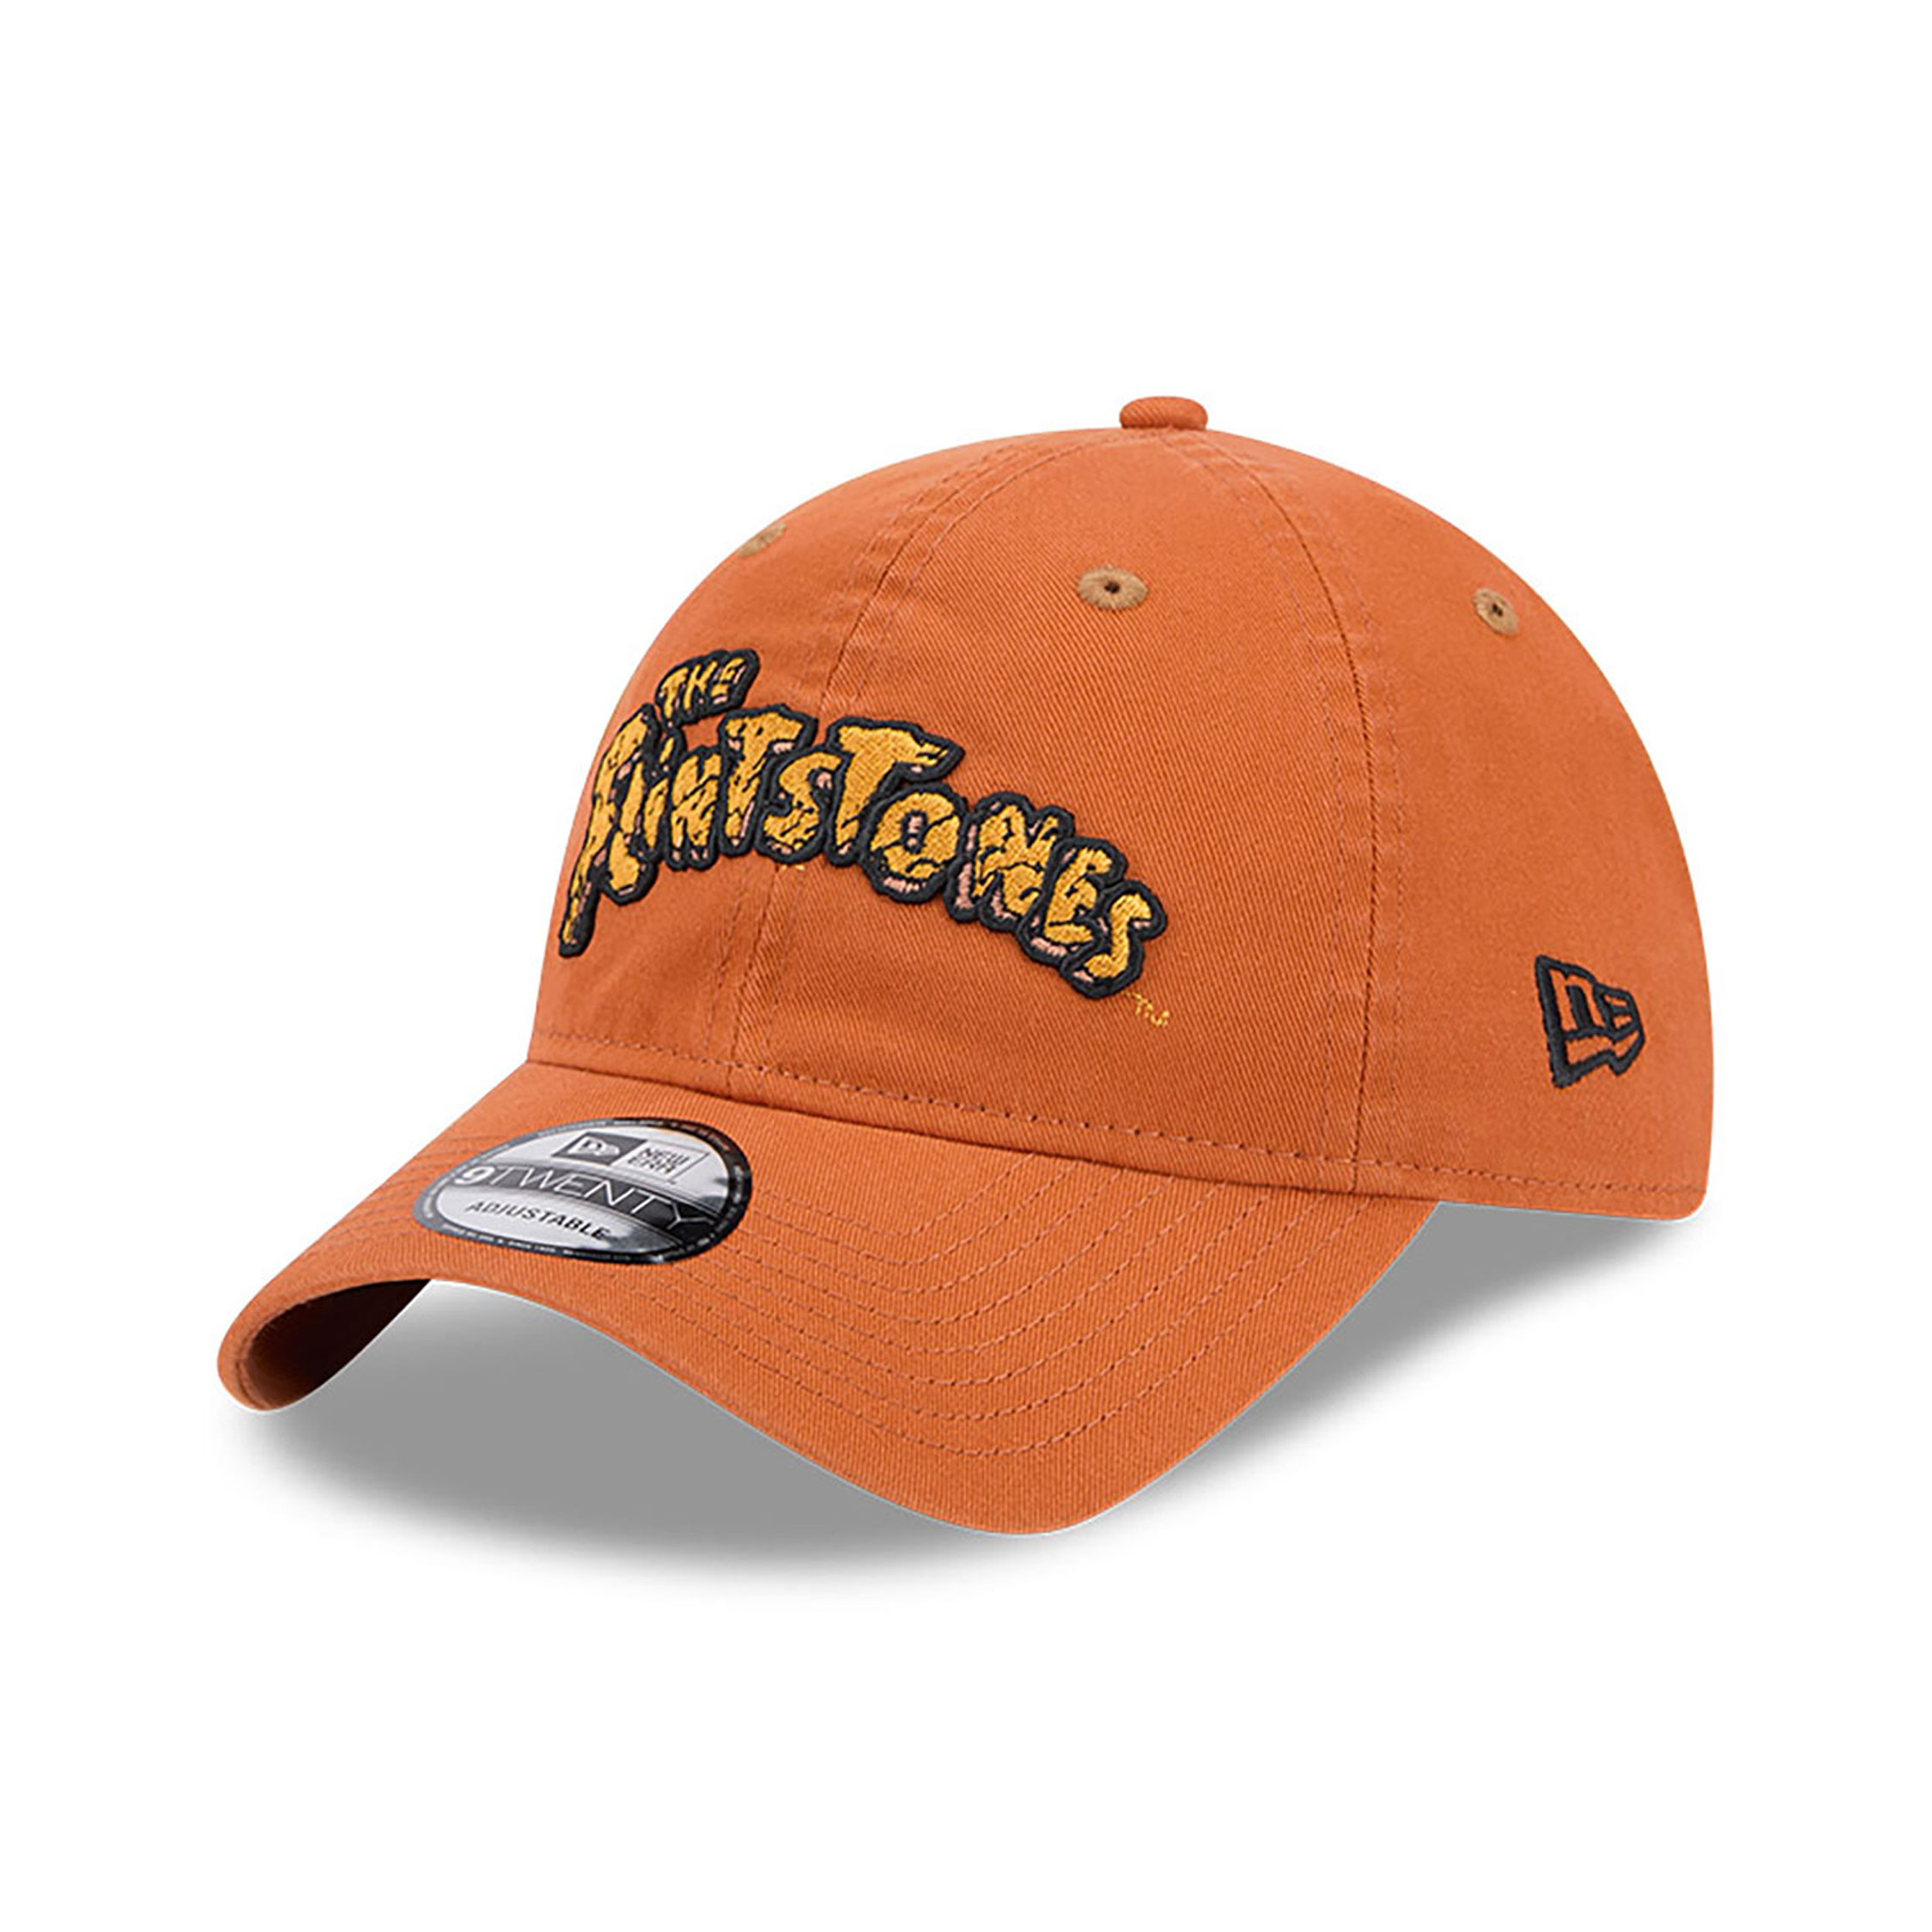 The Flintstones Brown 9TWENTY Adjustable Cap